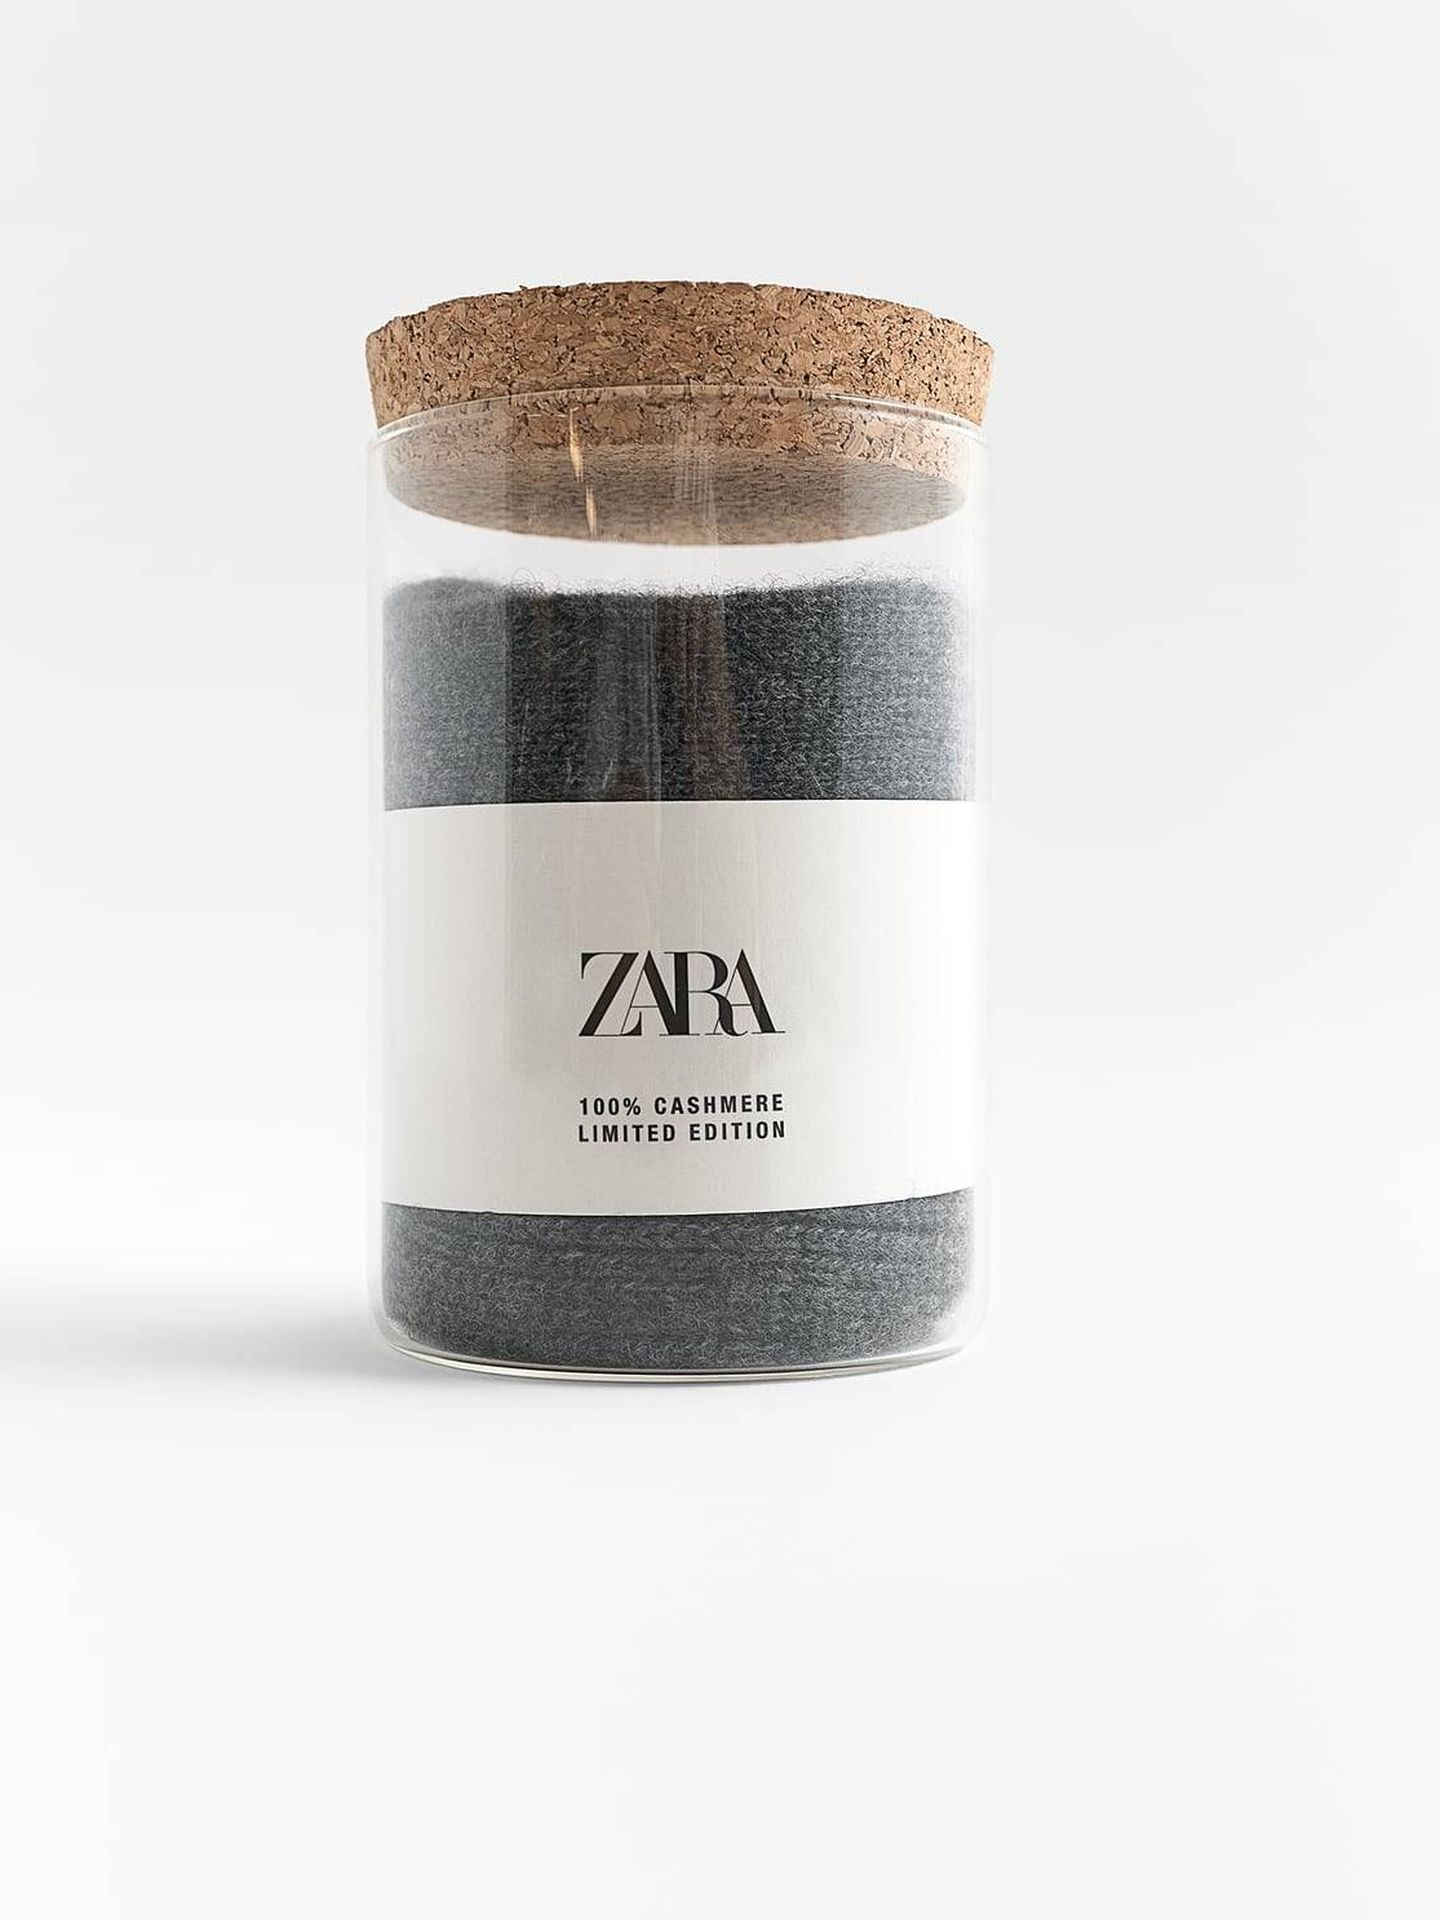 Calcetines de cachemira de Zara. (Cortesía)